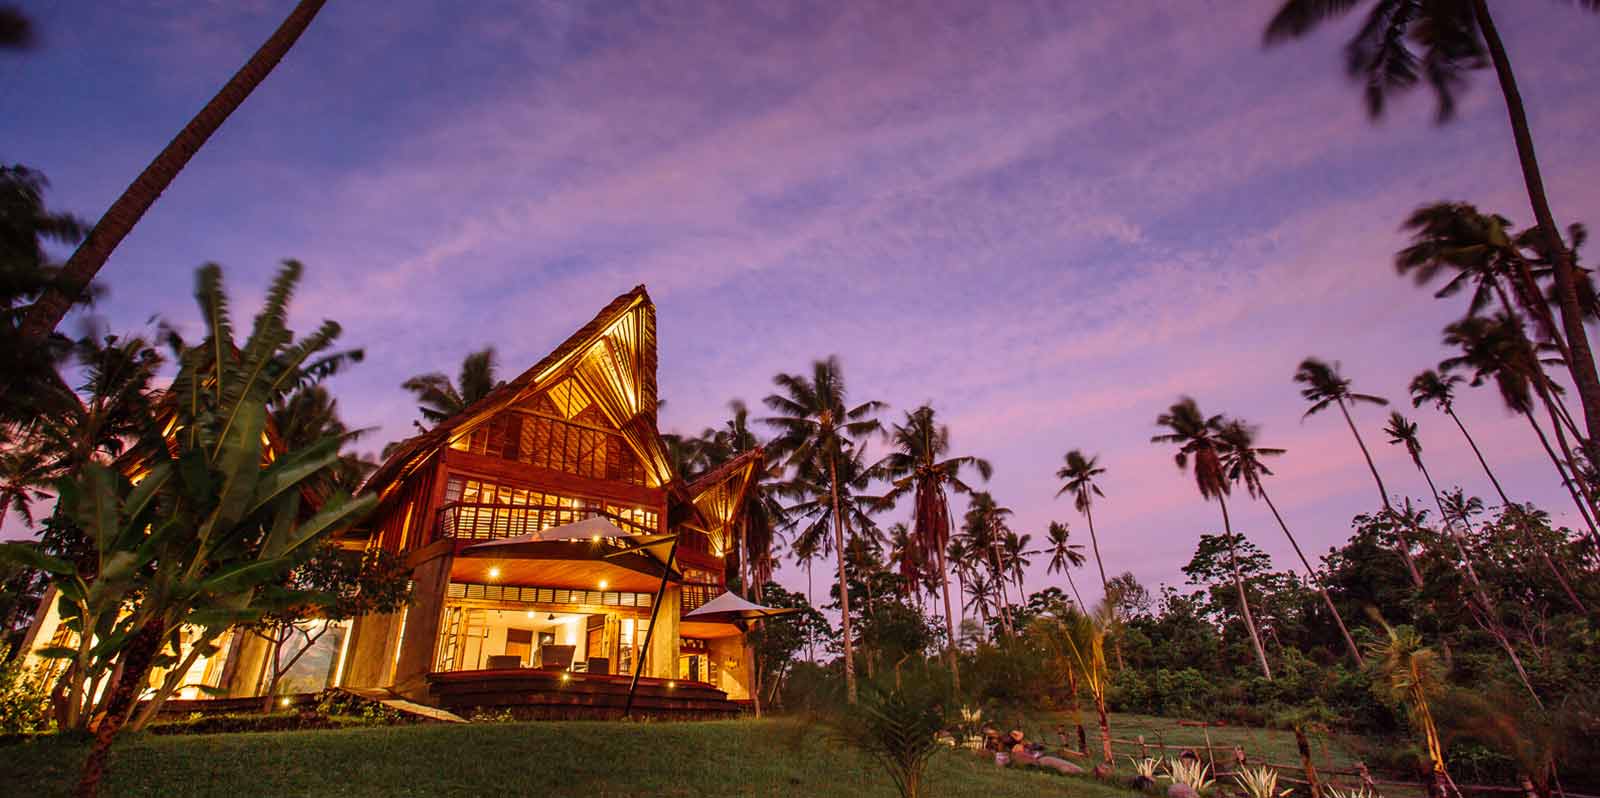 Bali Villa in purple sunset light